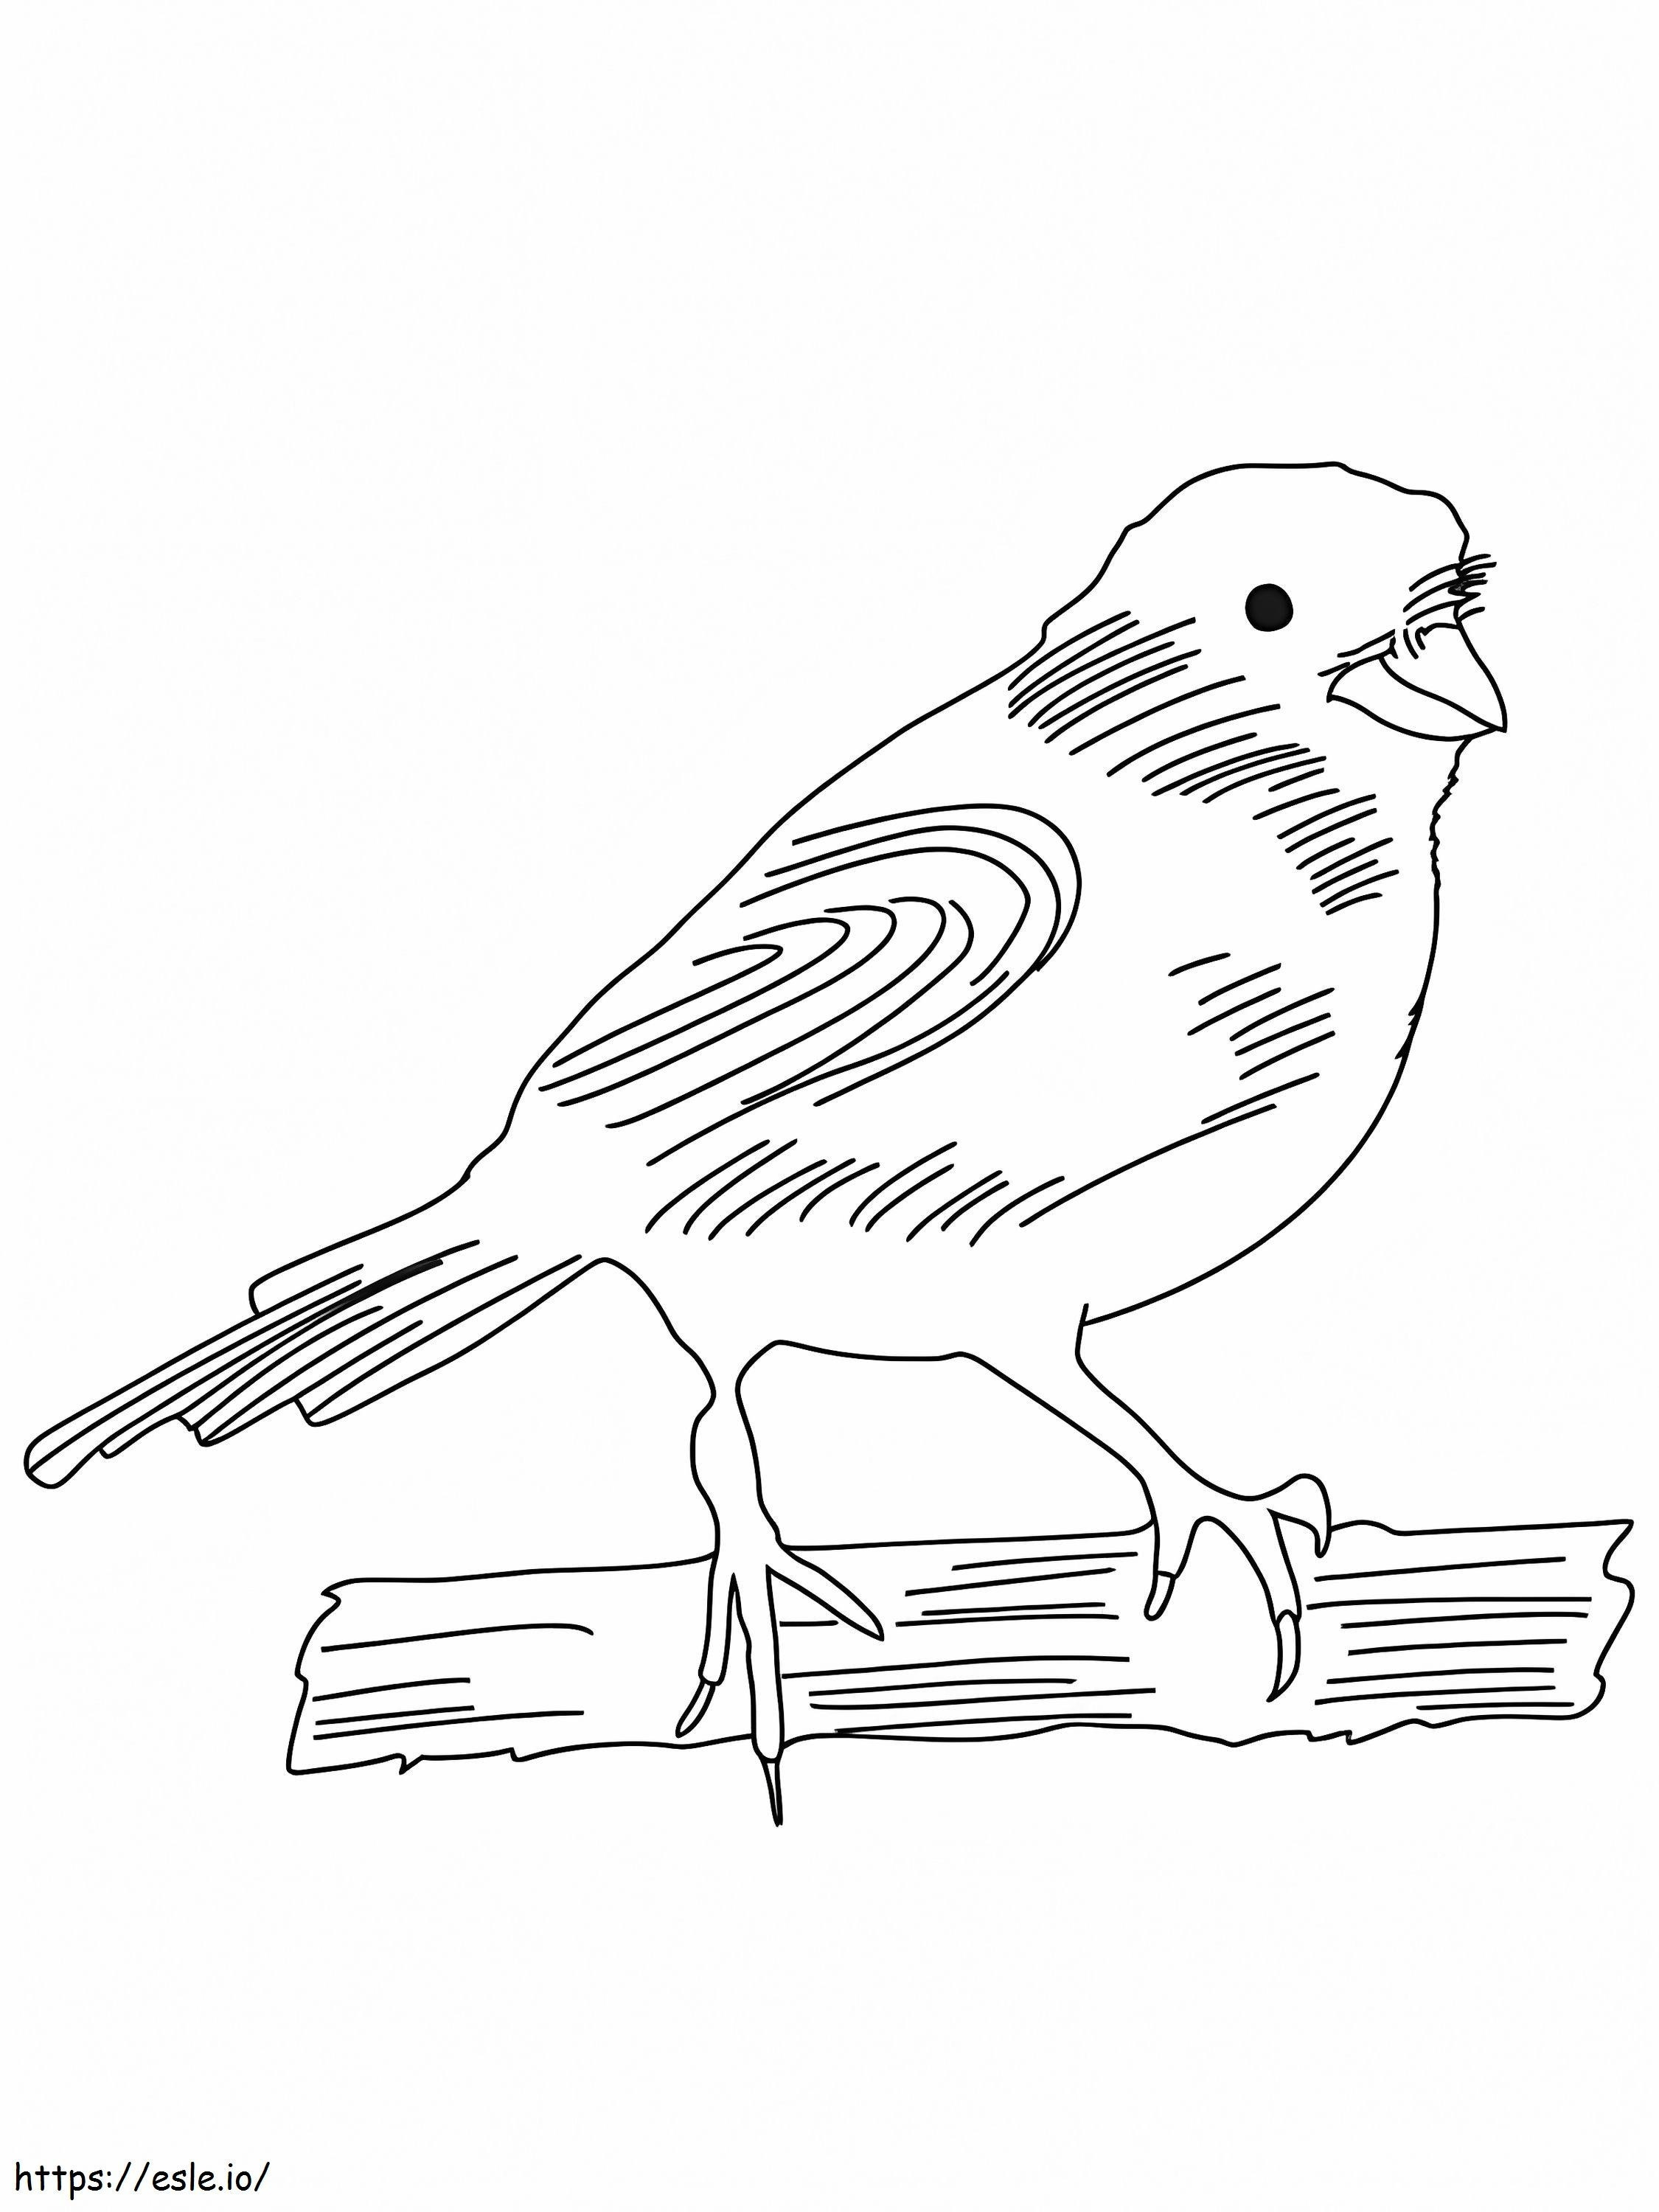 Desenare manuală pasăre canar de colorat